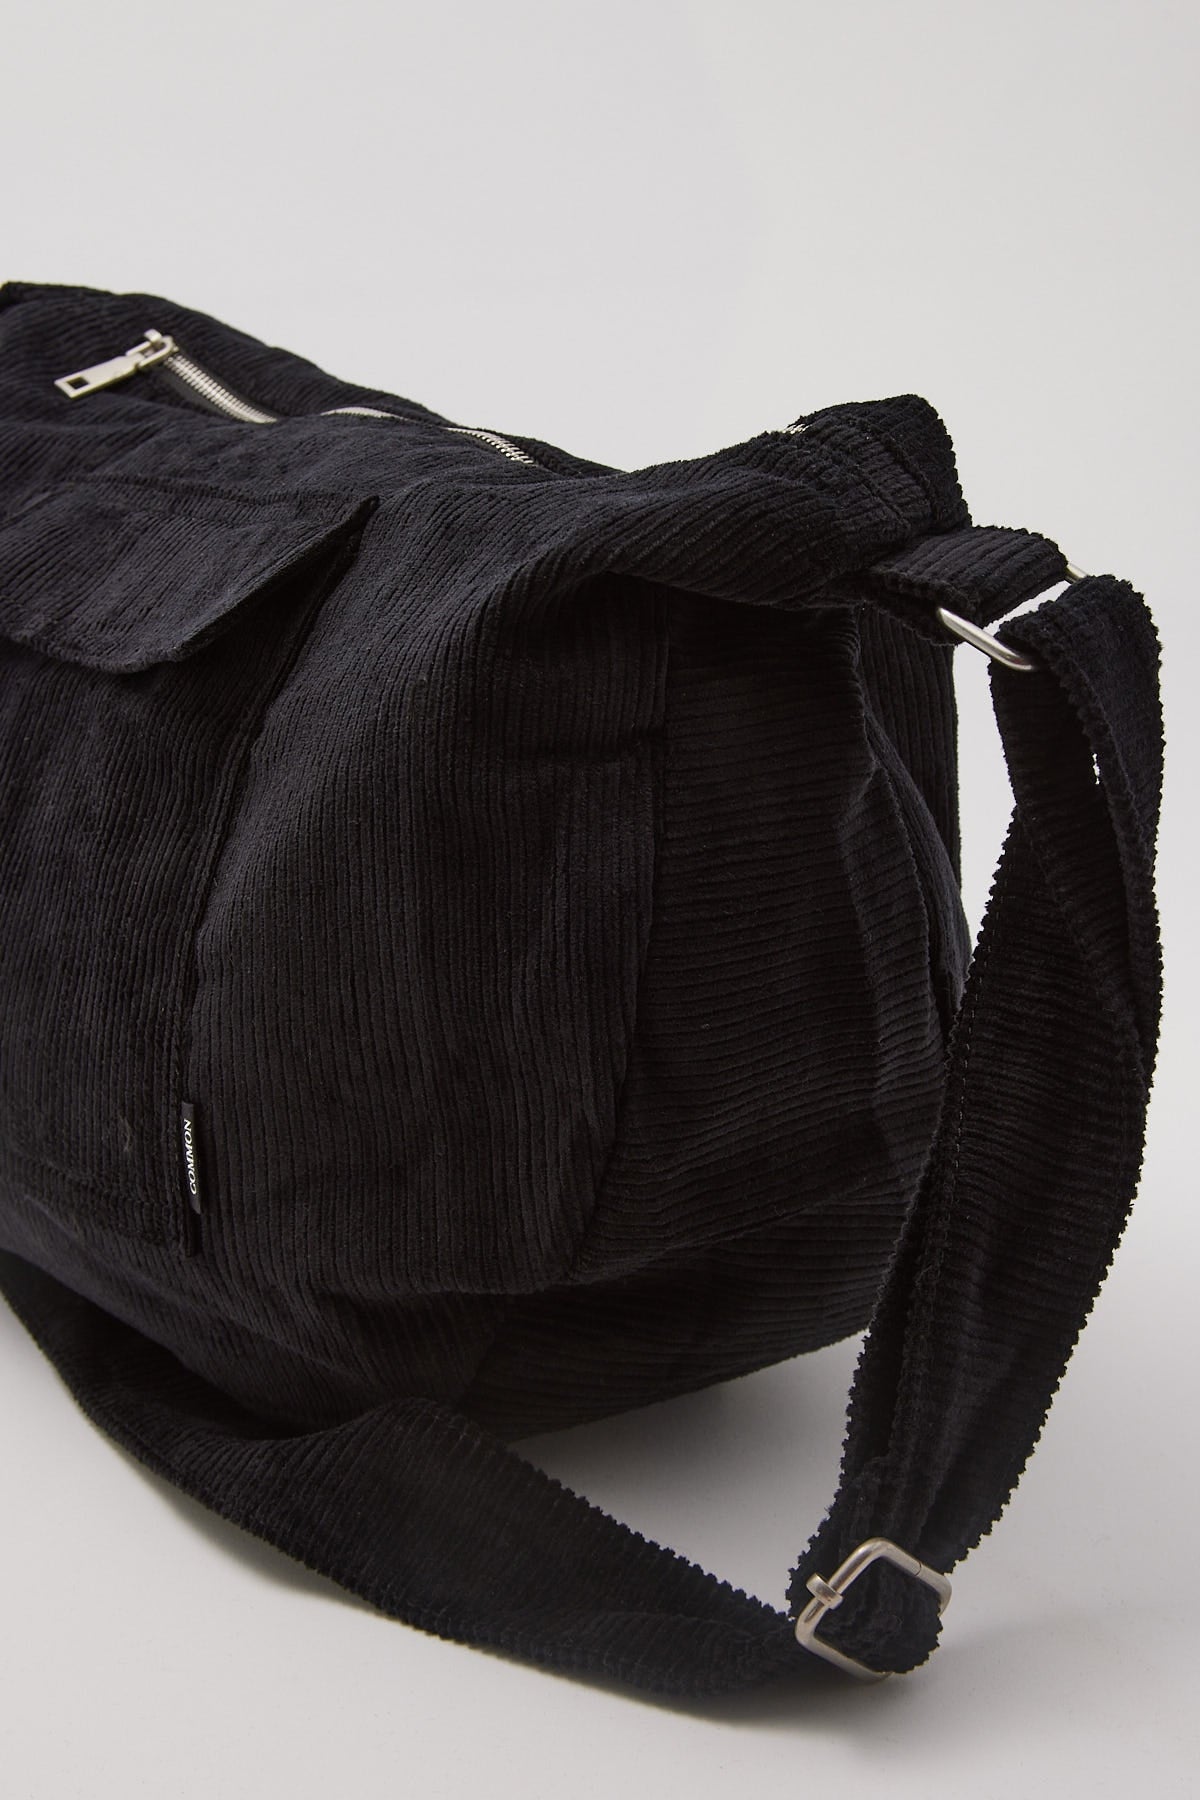 Common Need Cord Messenger Bag Black